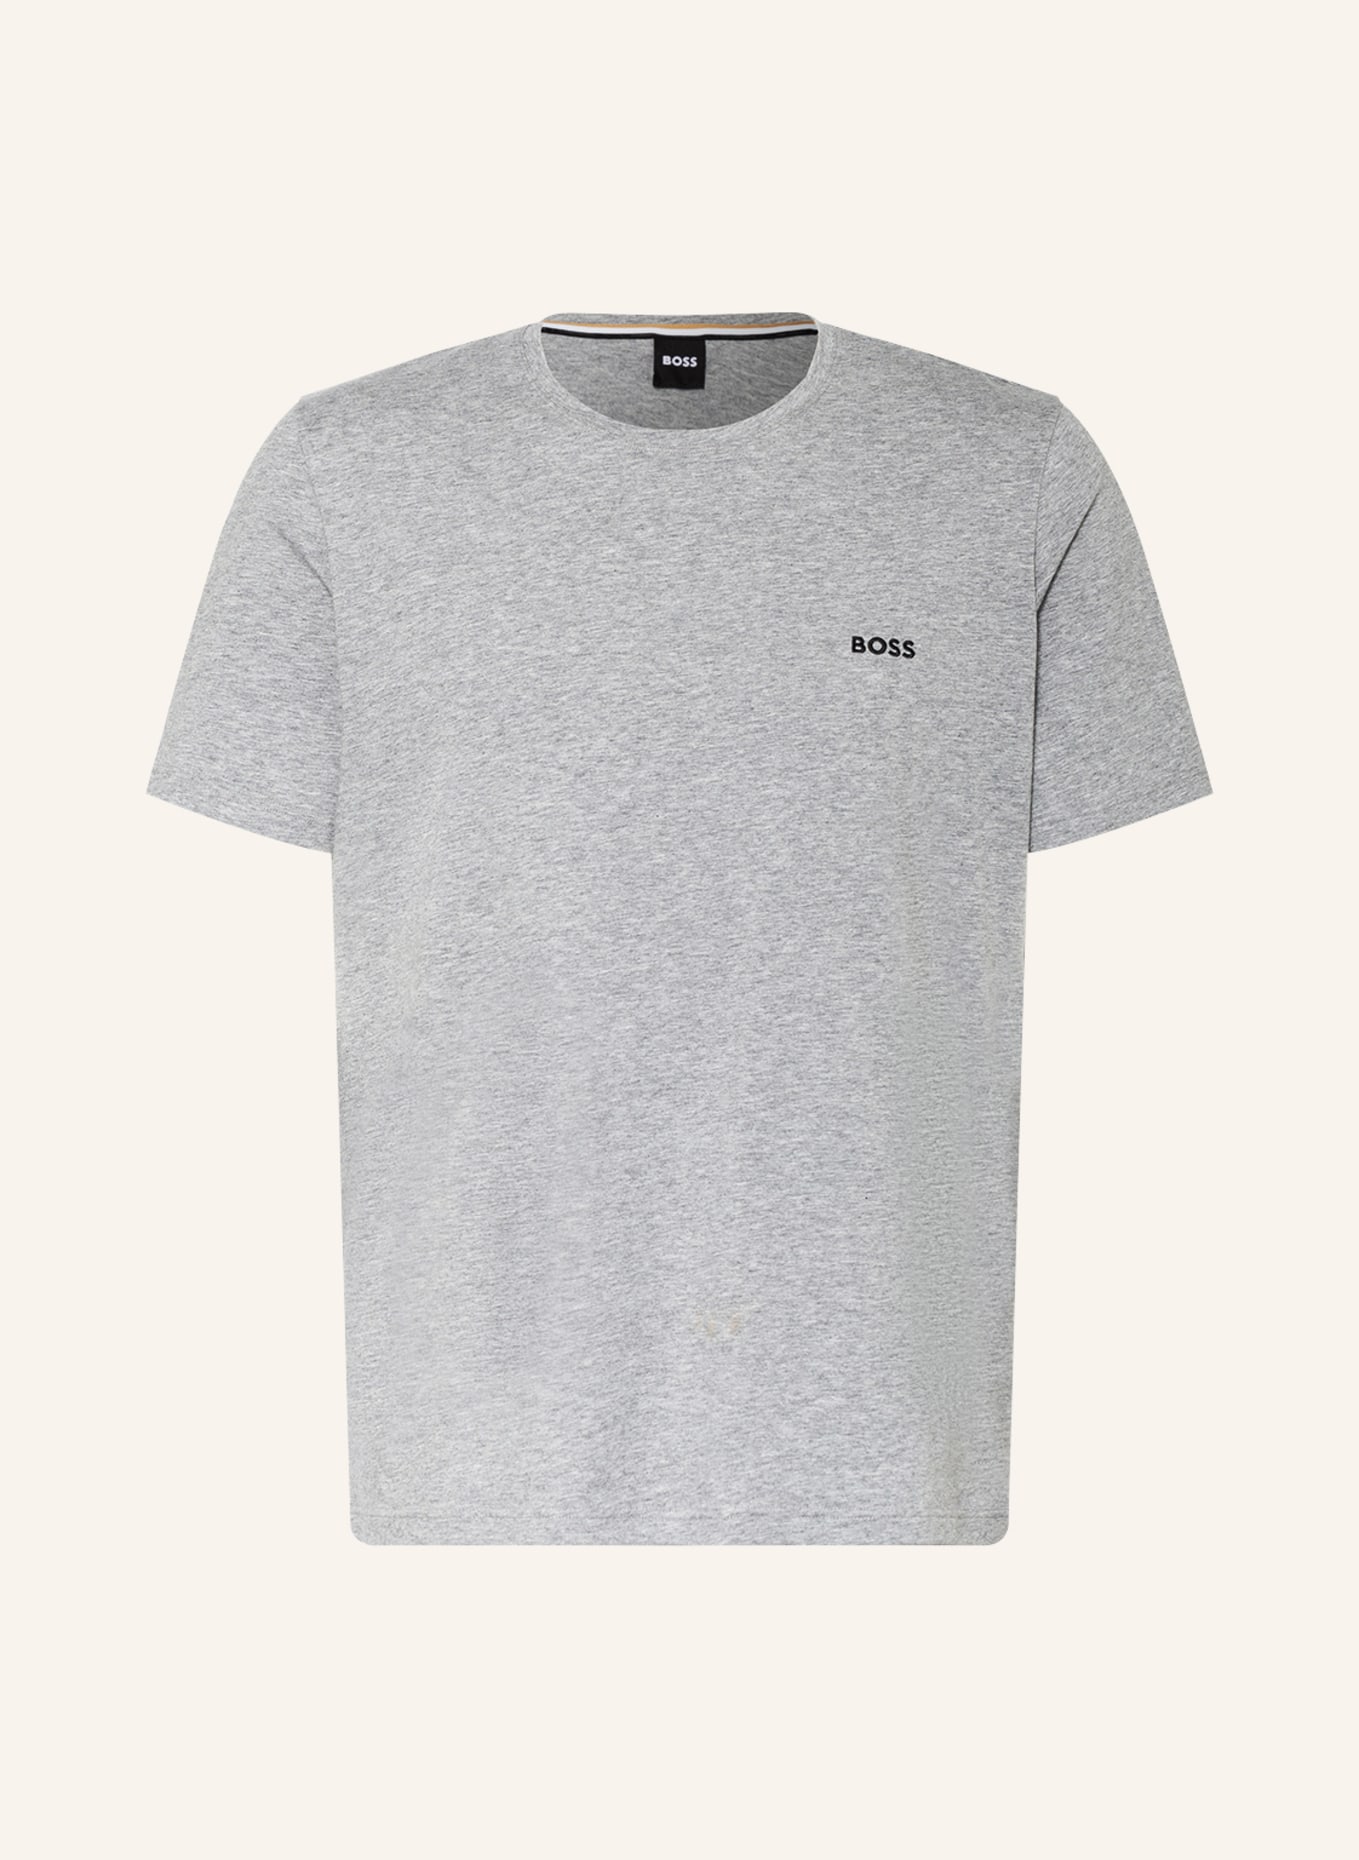 BOSS Lounge shirt MIX&MATCH, Color: GRAY (Image 1)